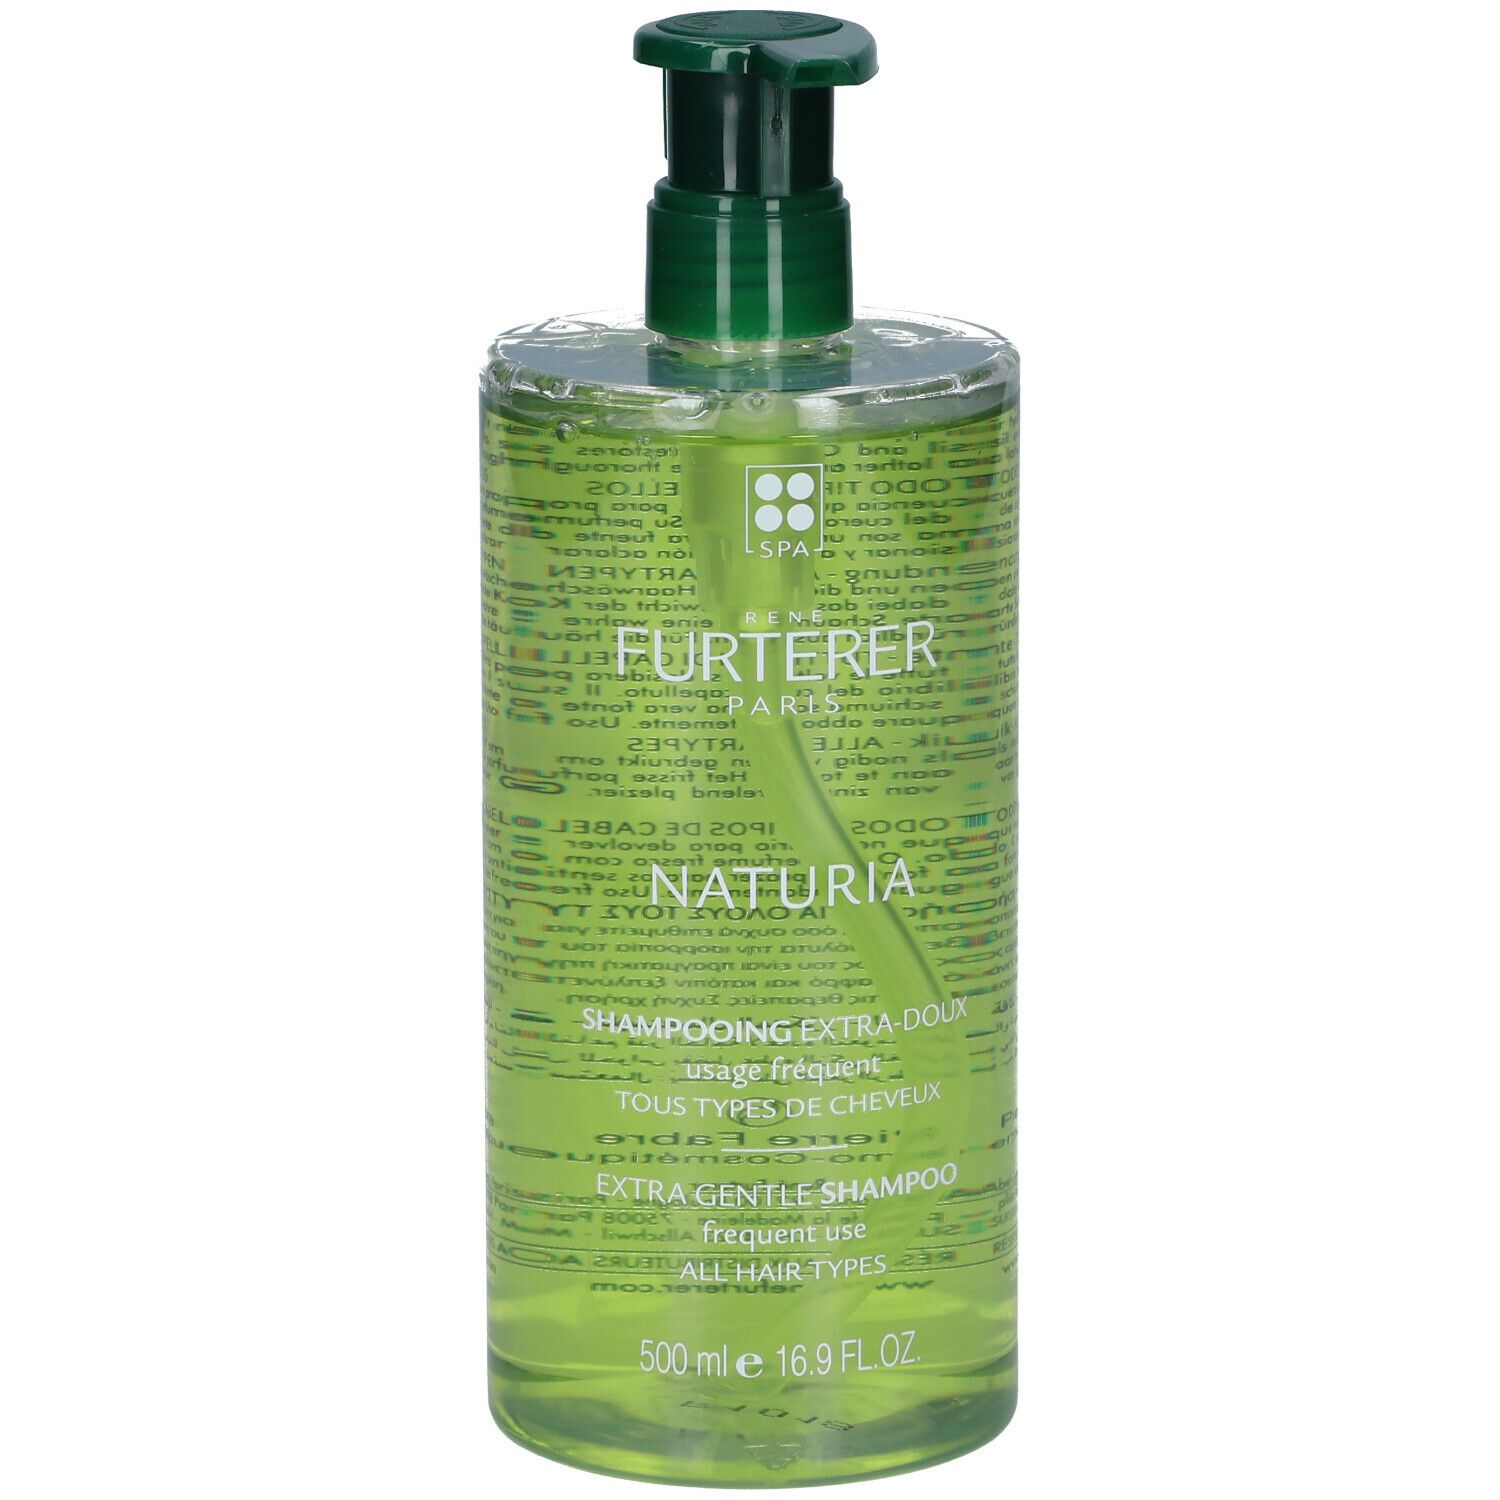 René Furterer Naturia shampooing extra doux